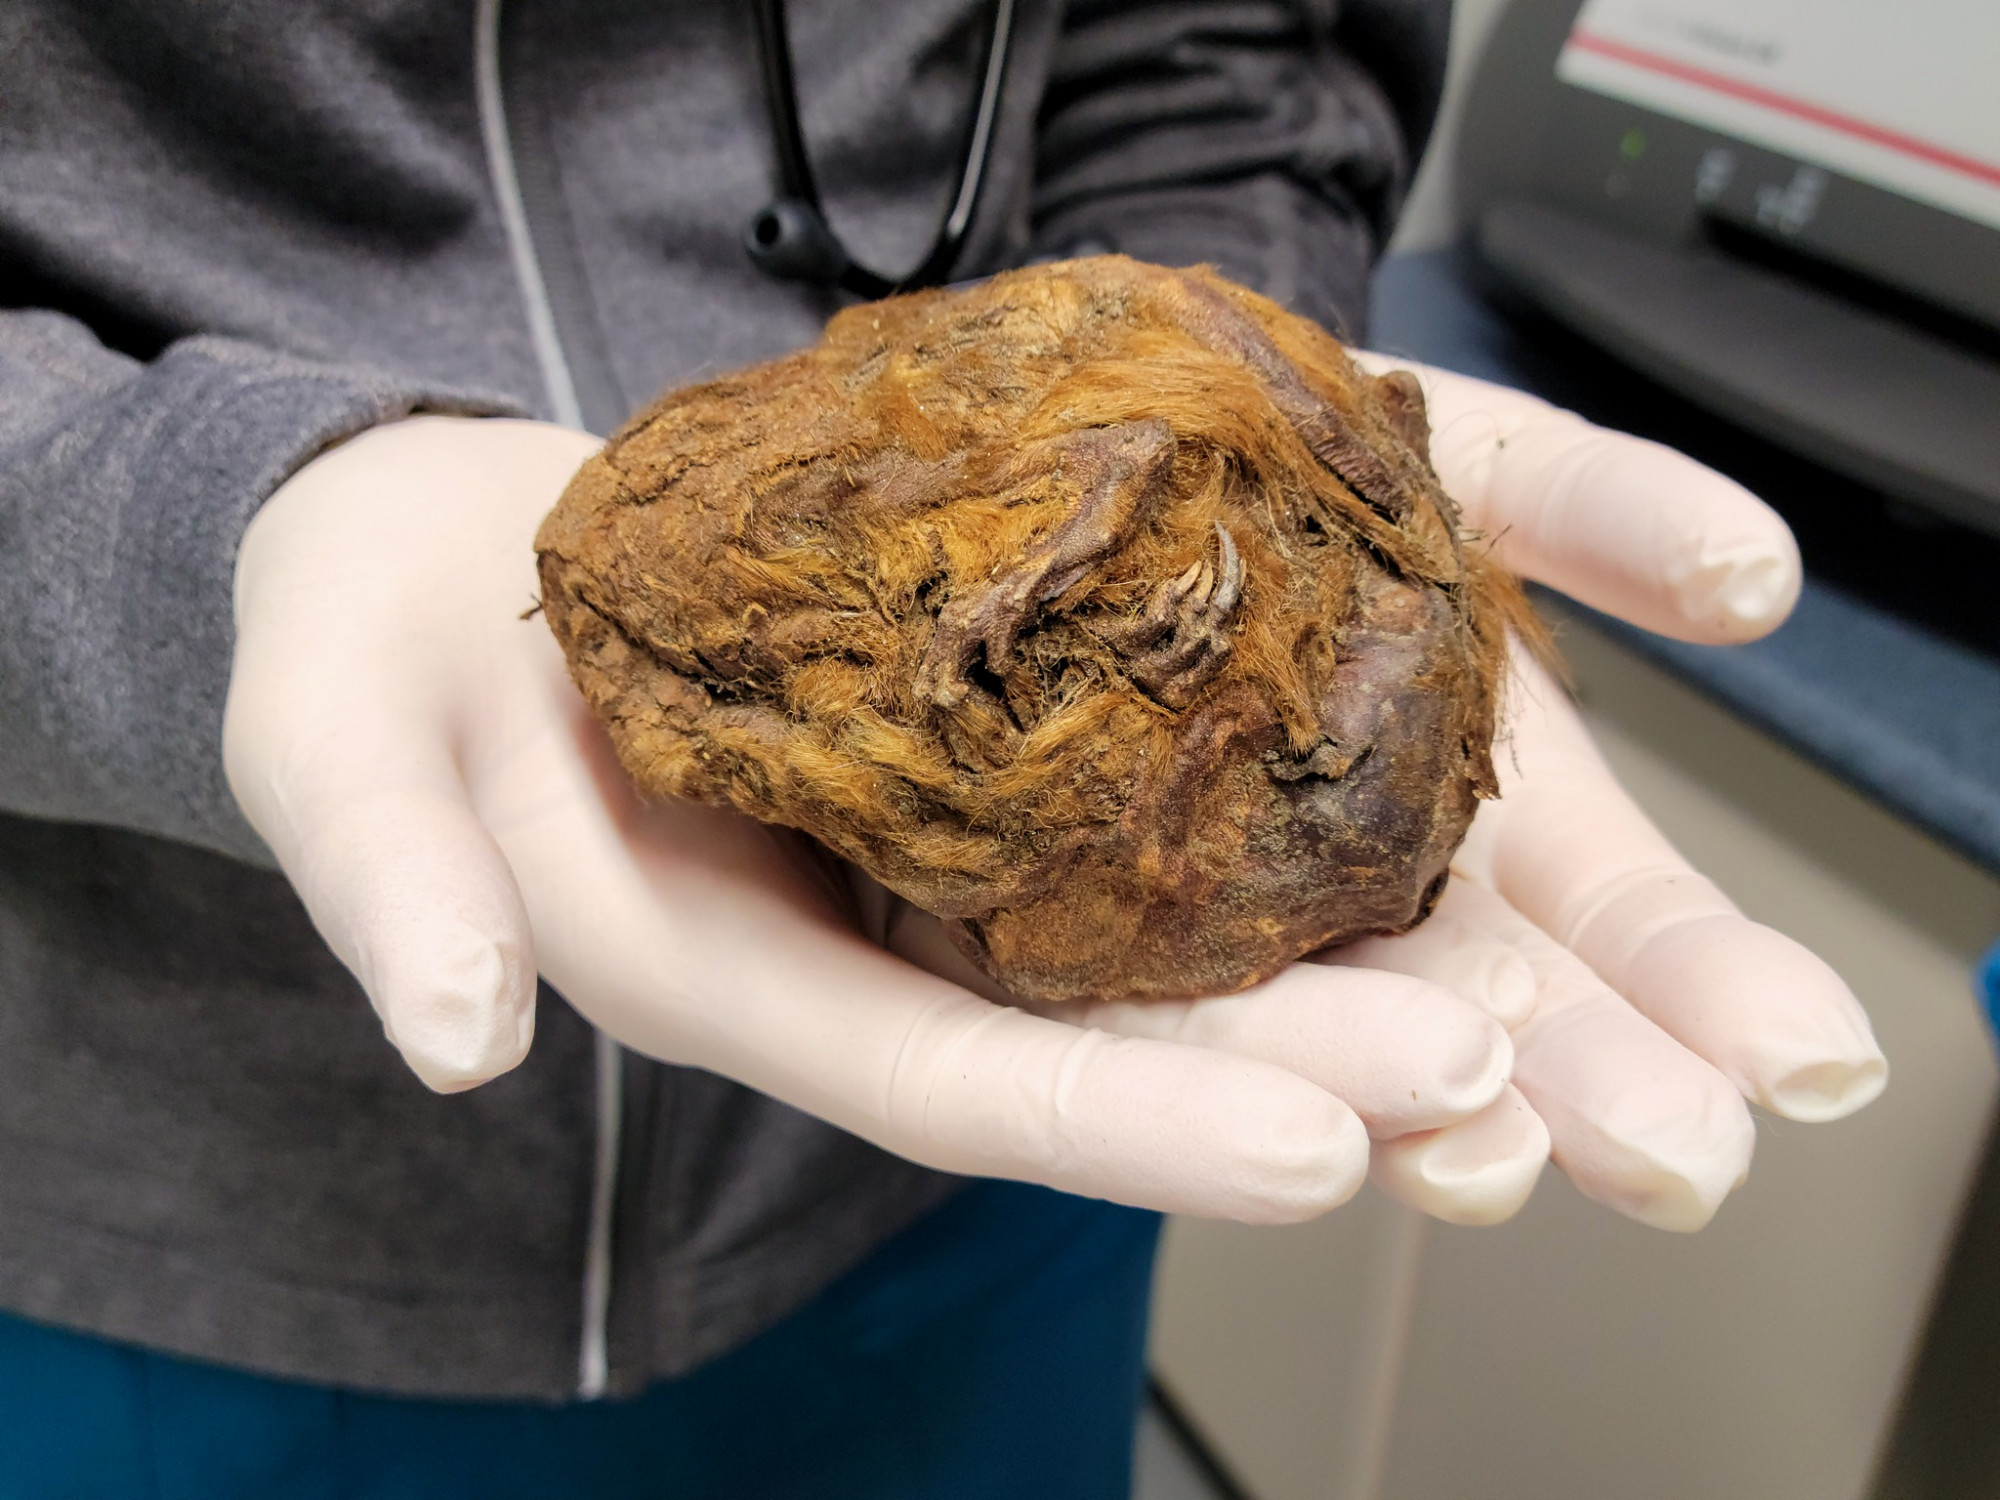 Kiderült, mit rejt az a 30 ezer éve befagyott szőrgolyó, amire yukoni aranybányászok bukkantak rá